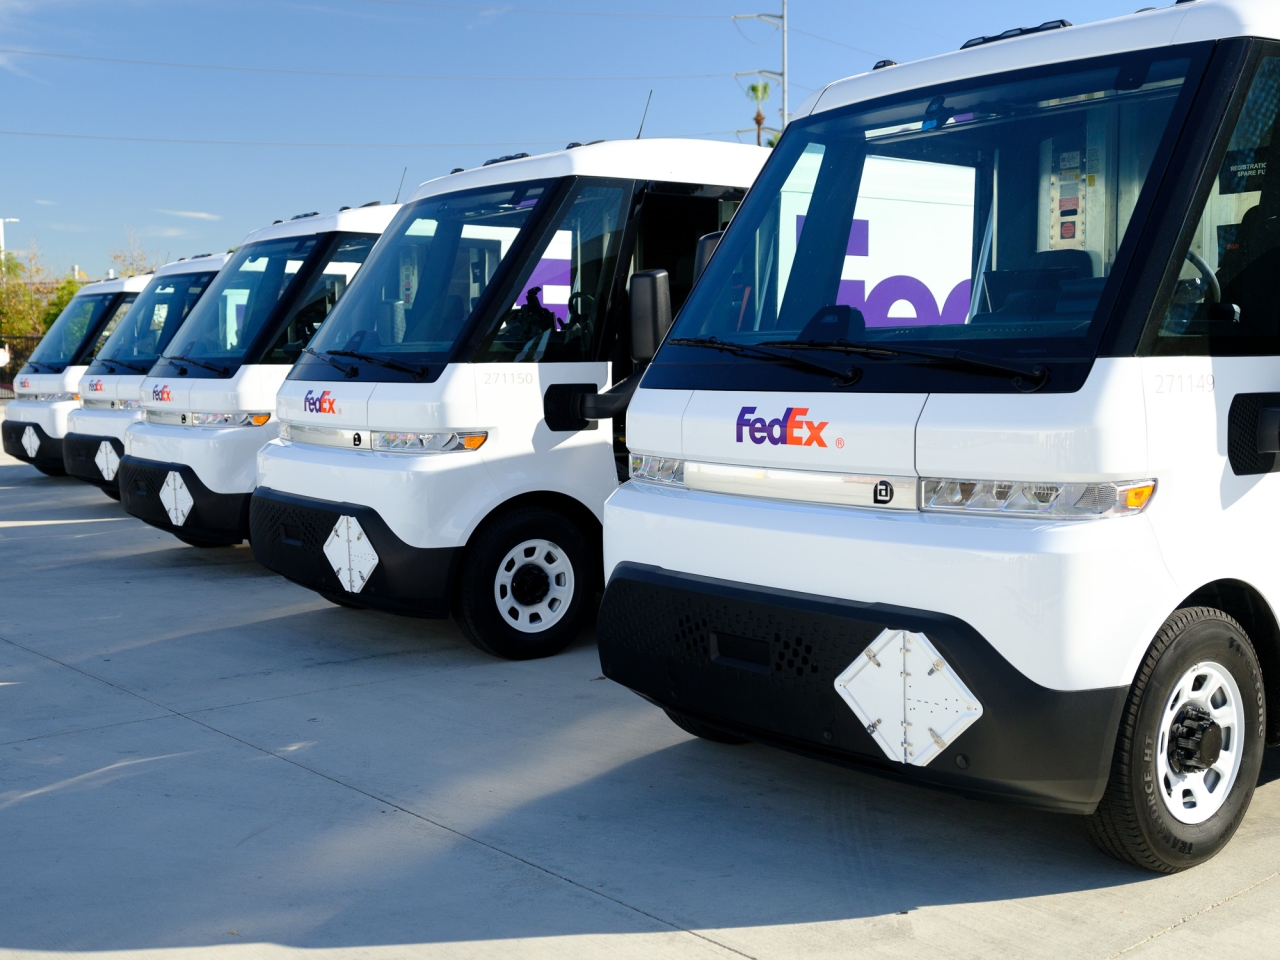 Fleet of FedEx EVs